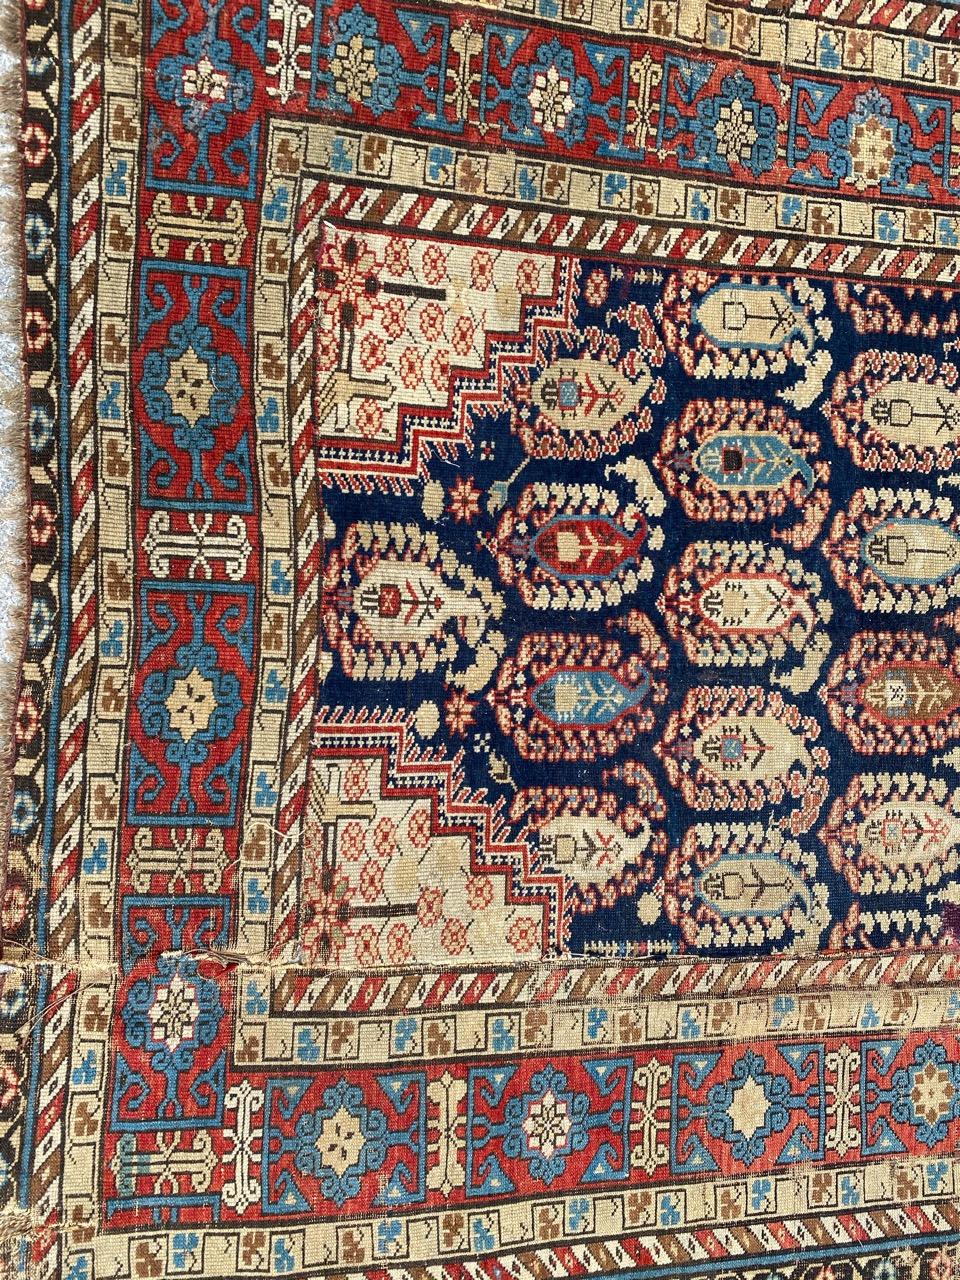 Schöner antiker kaukasischer Teppich mit schönem Botteh-Muster und schönen Farben, komplett und fein handgeknüpft mit Wollsamt auf Wollfond.

✨✨✨
